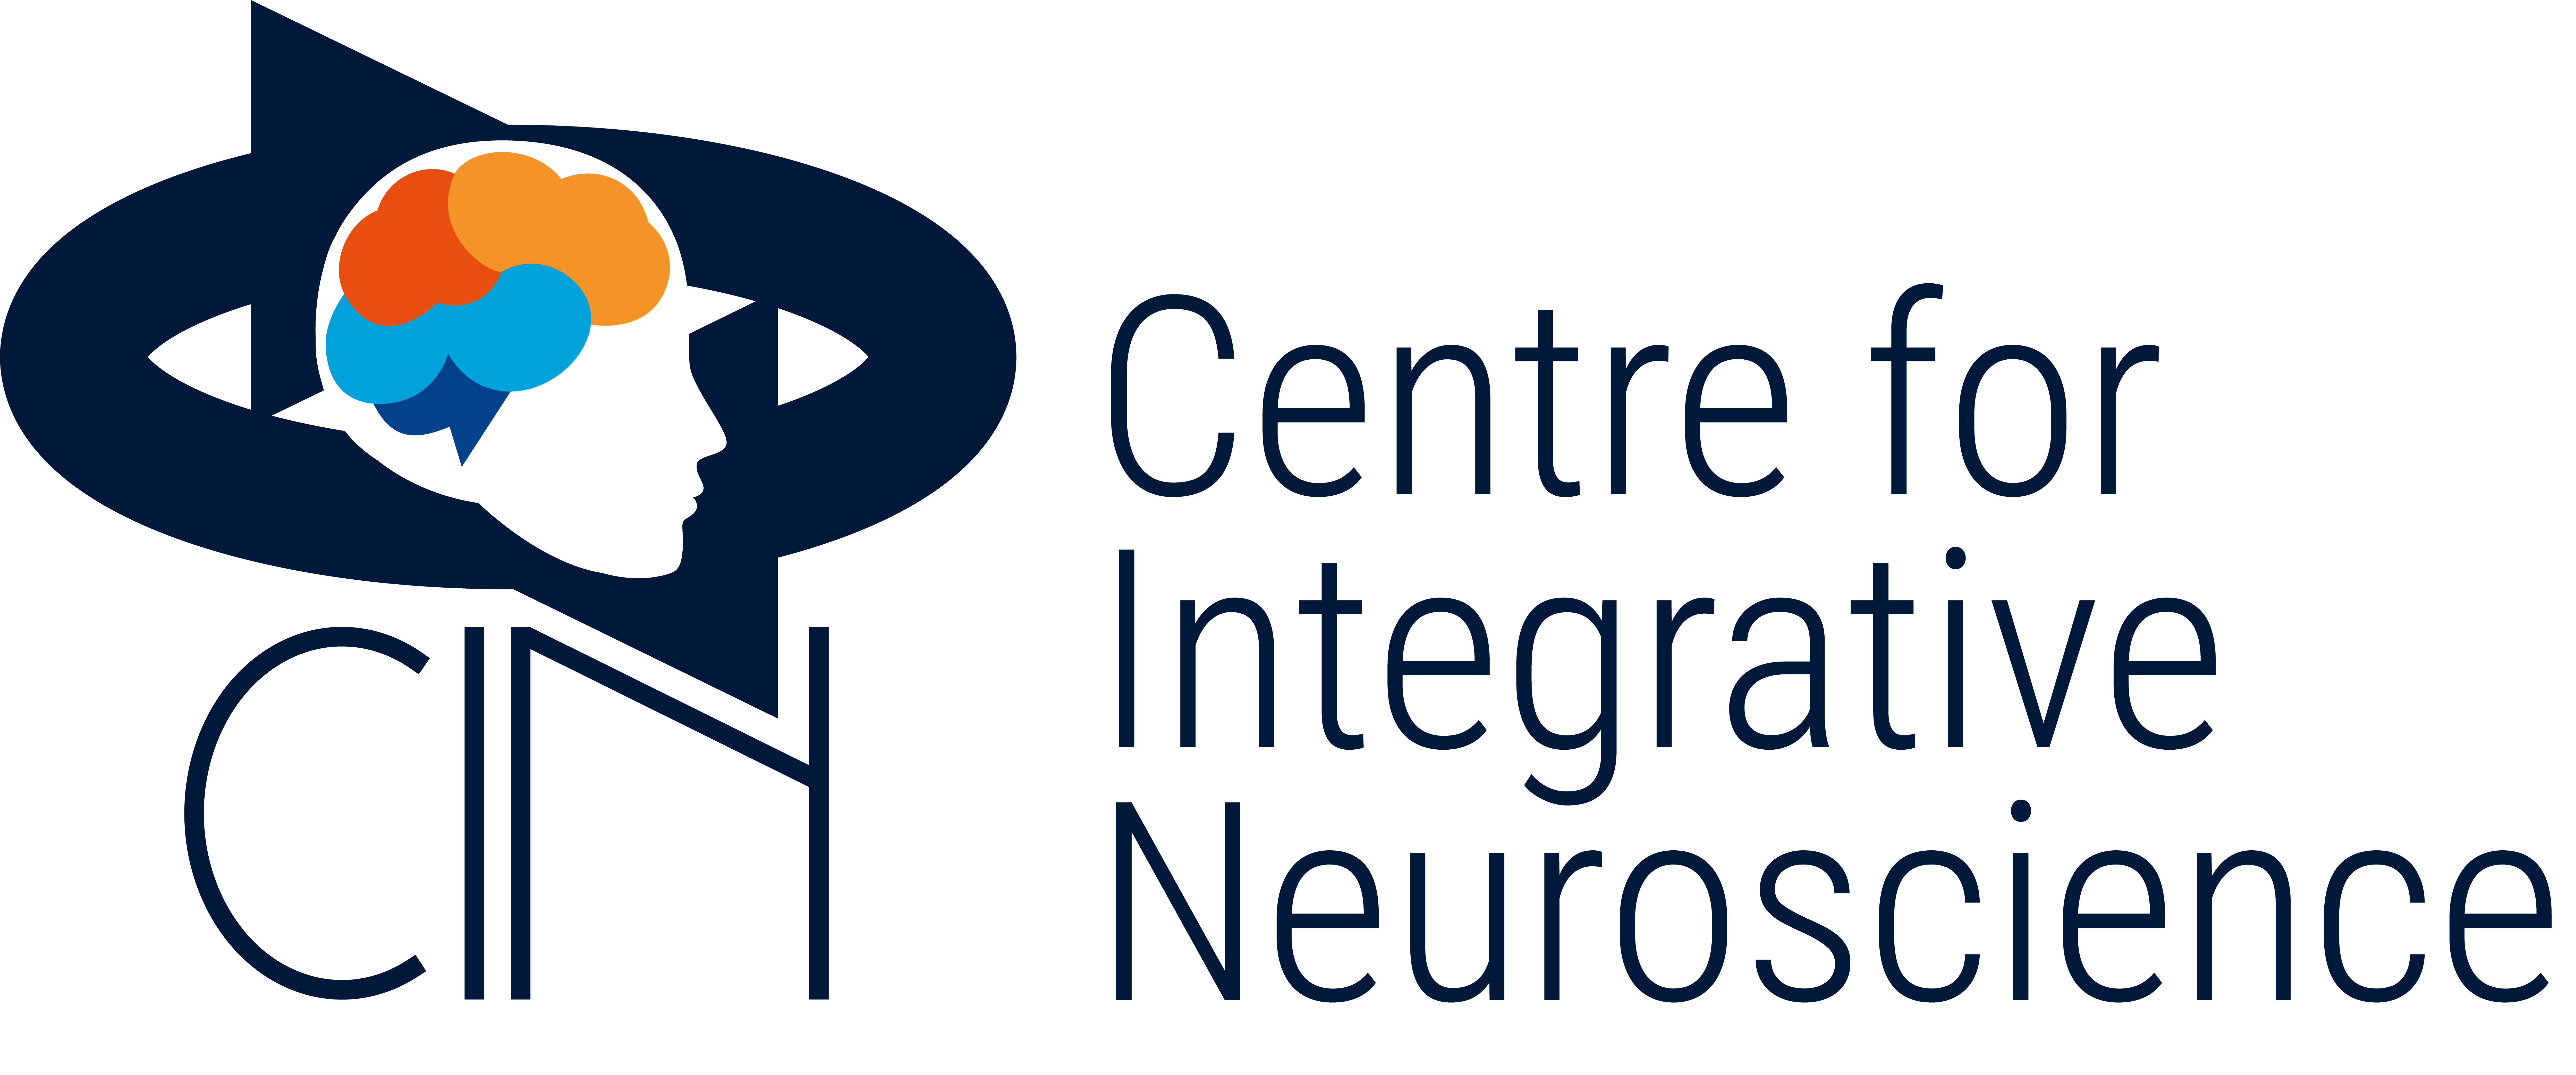 Center for Integrative Neuroscience (CIN) kickoff